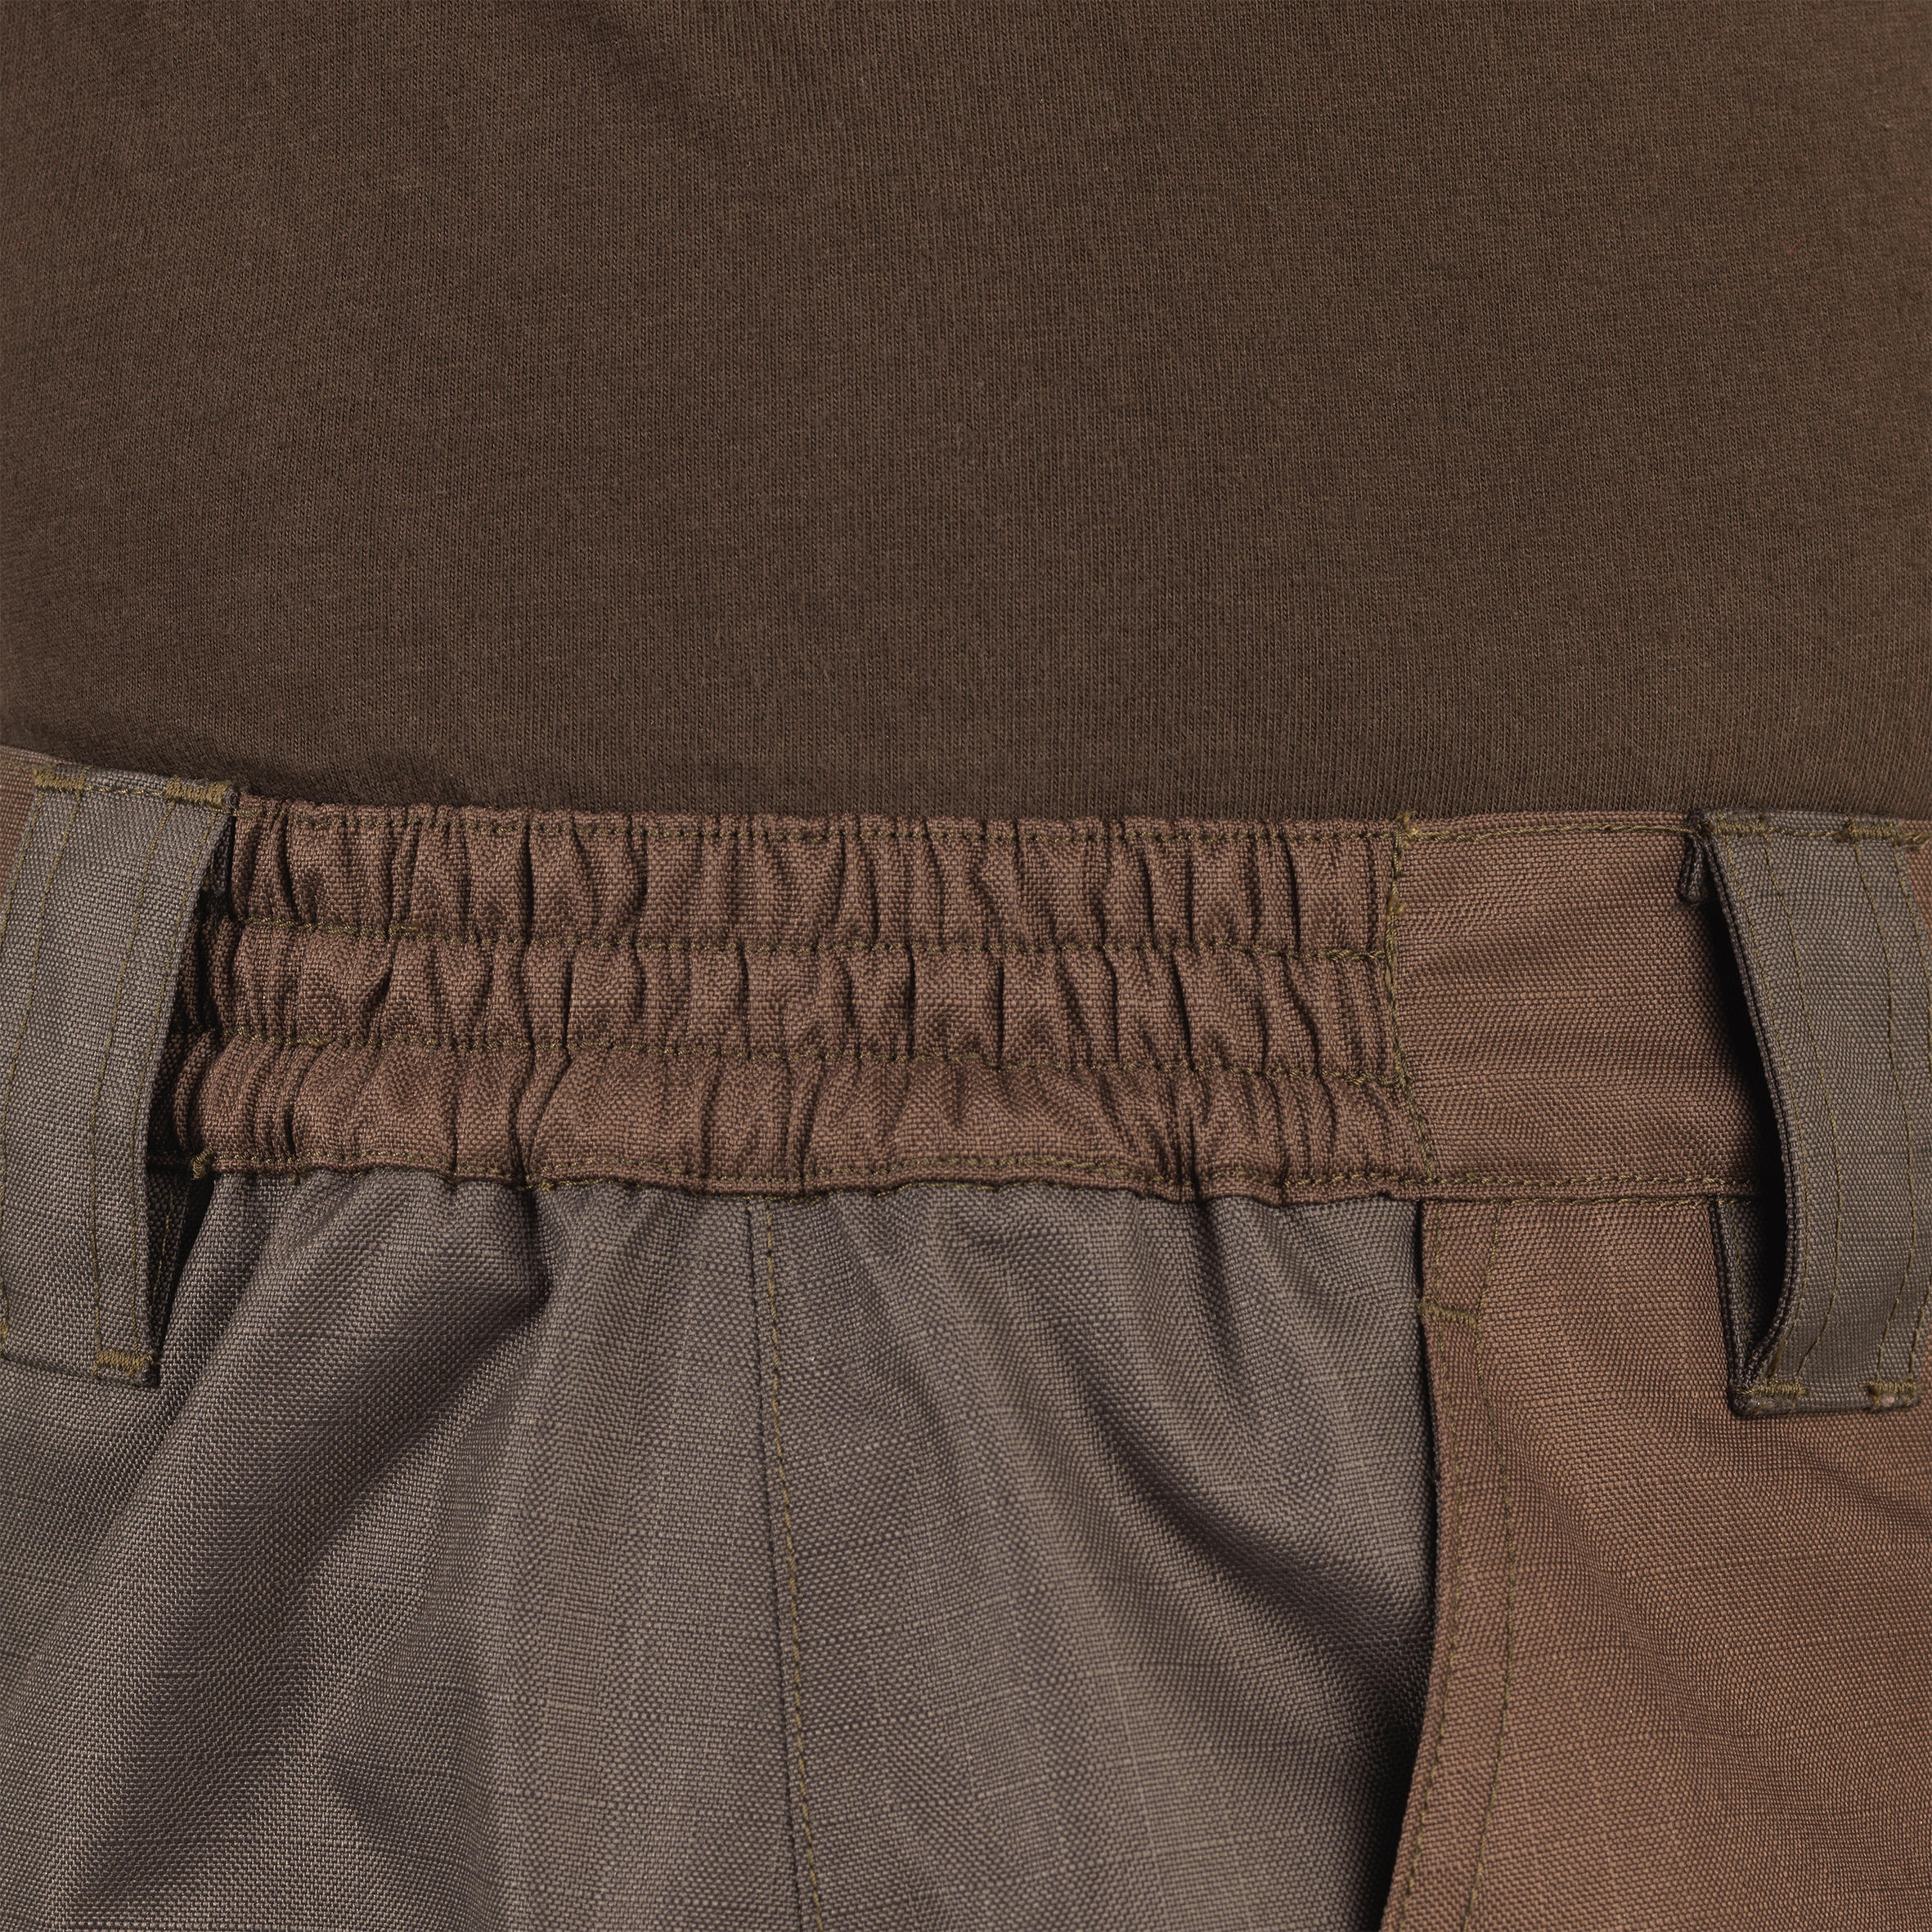 Durable Waterproof Trousers - Brown 6/6